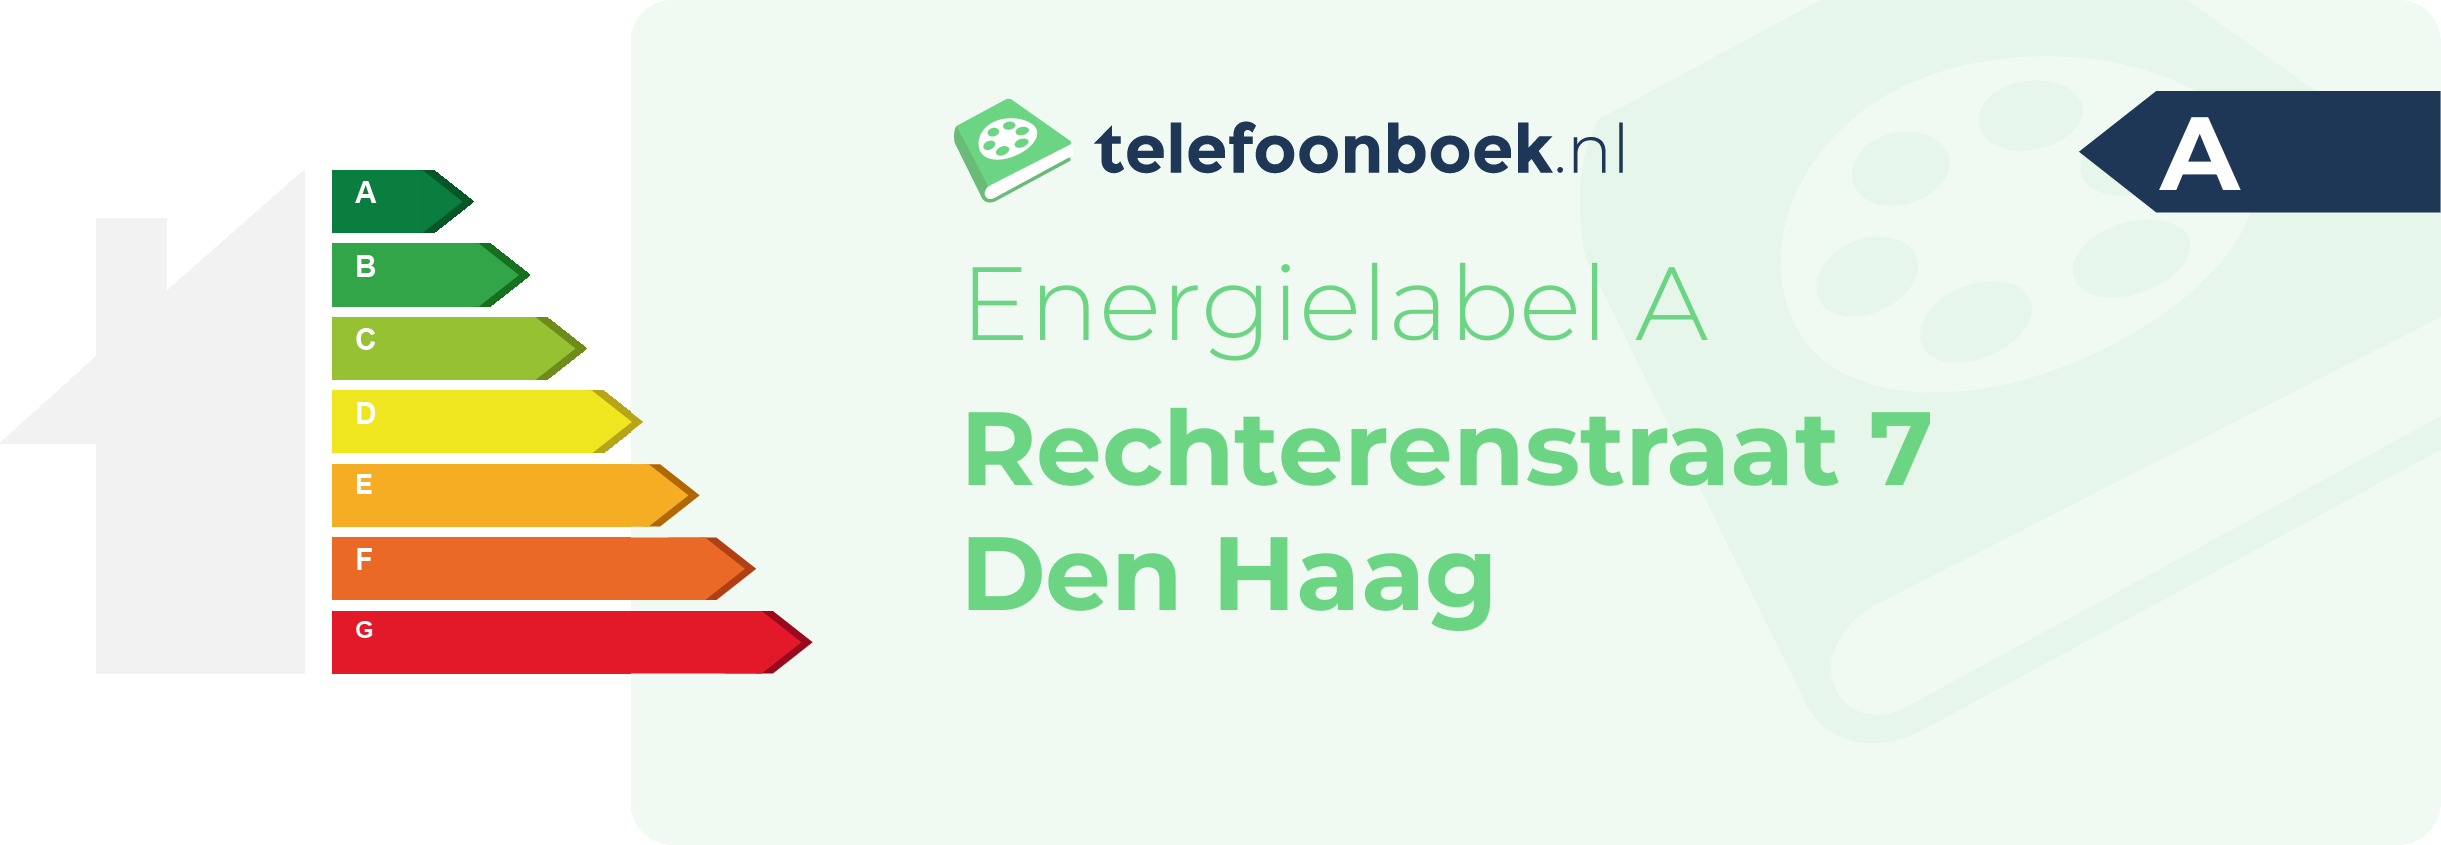 Energielabel Rechterenstraat 7 Den Haag